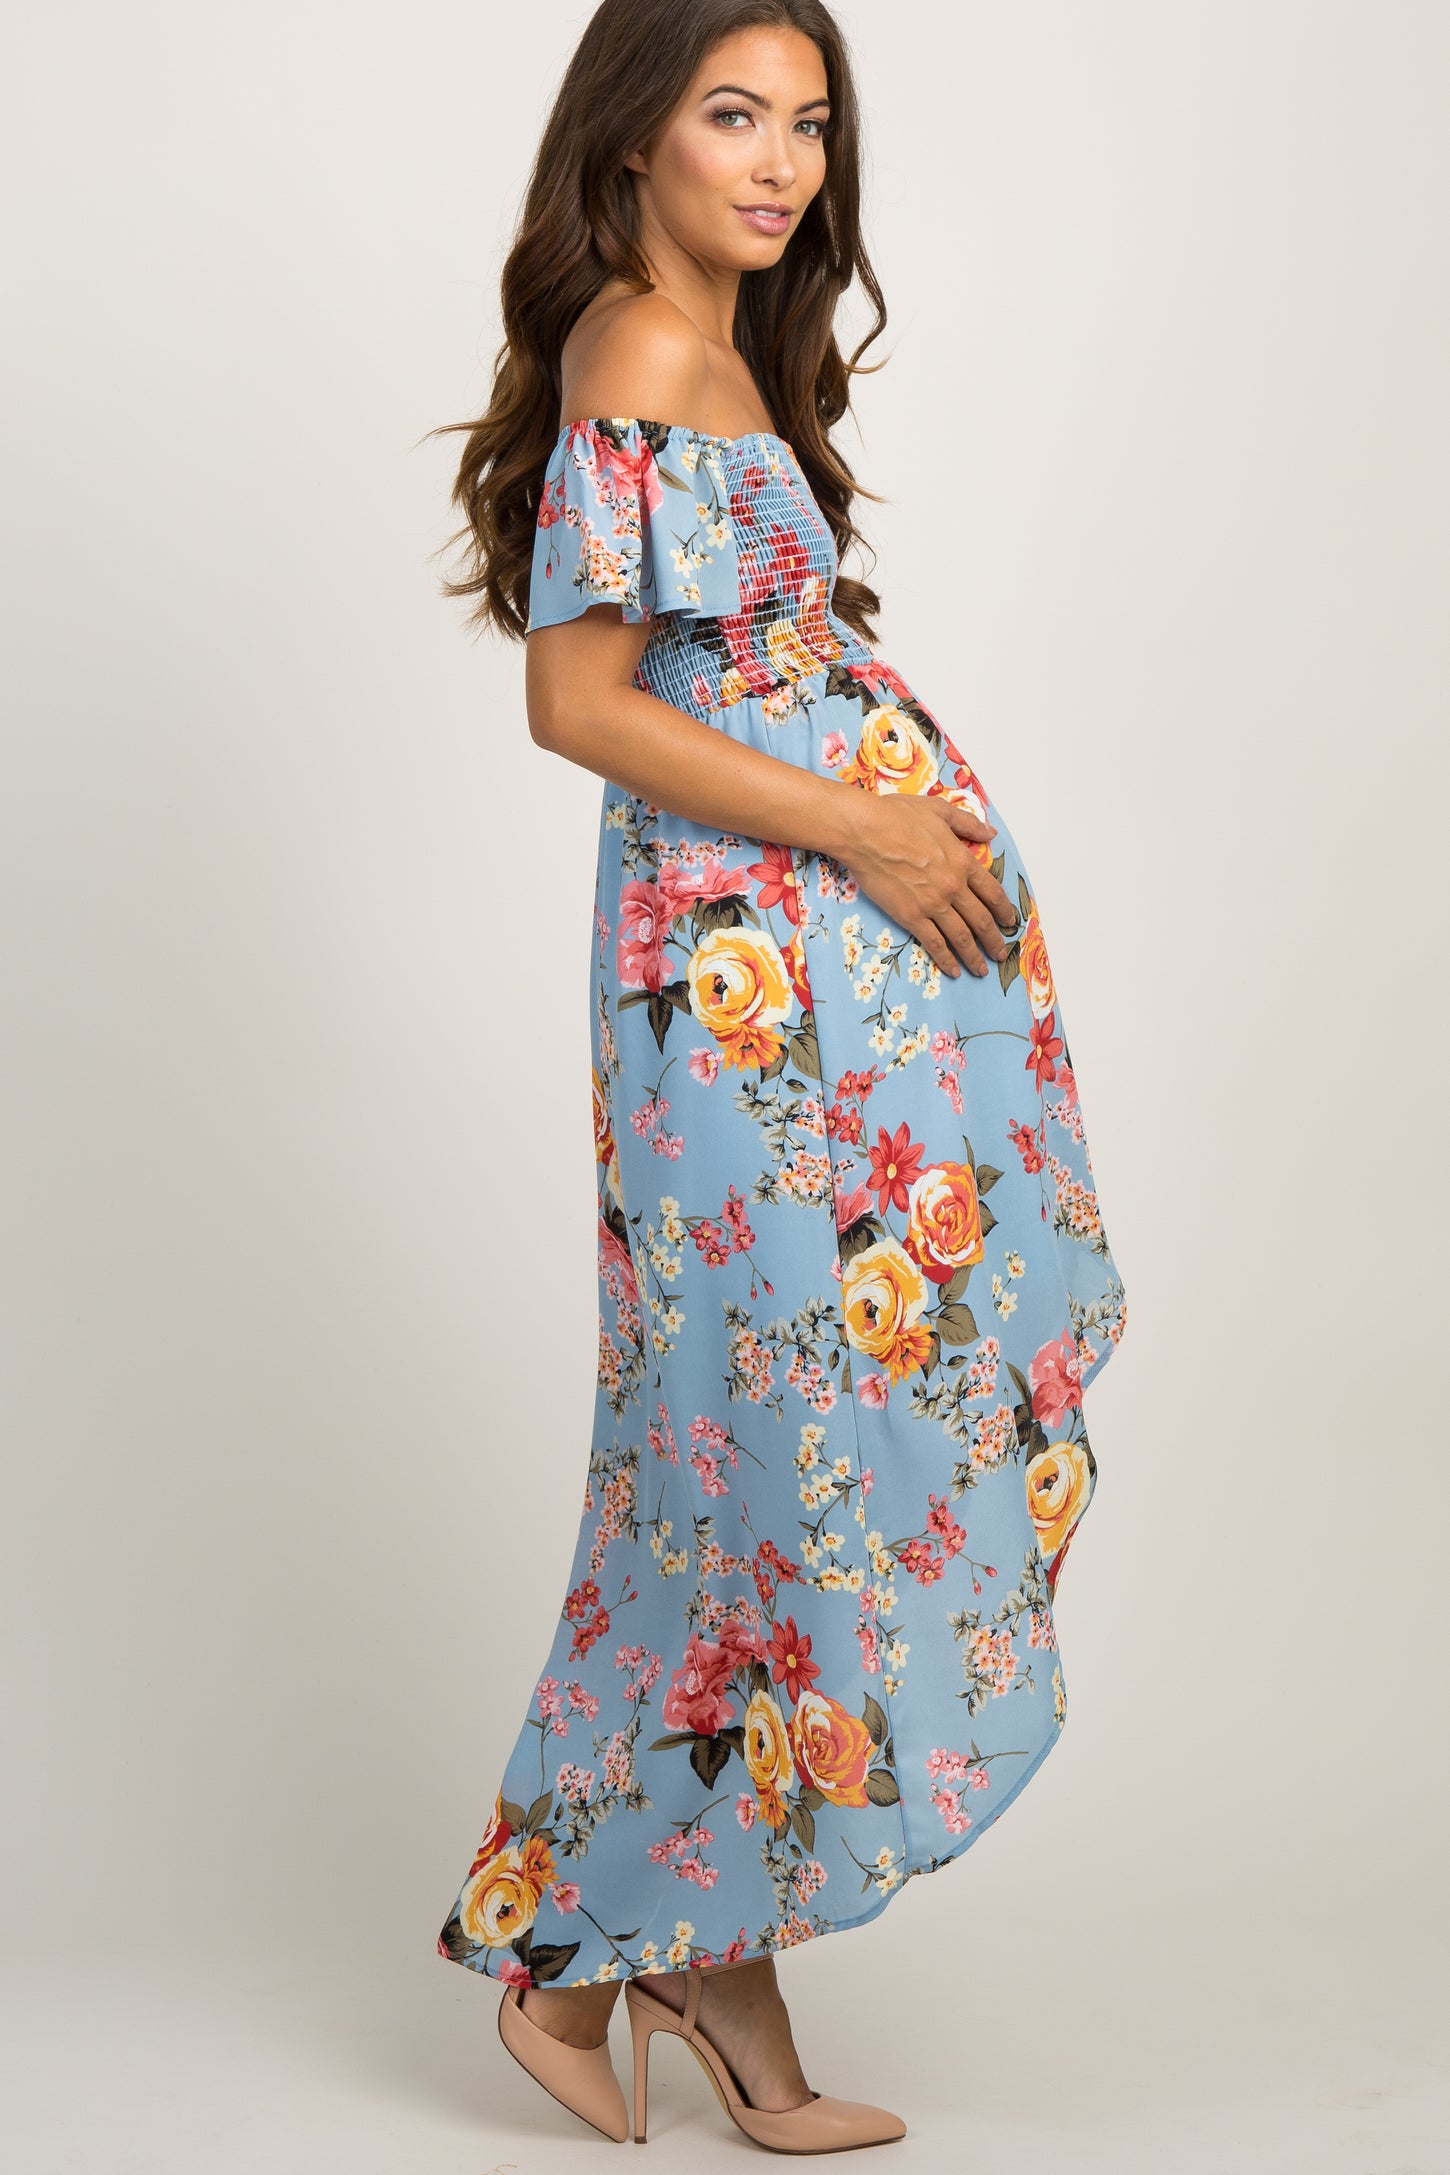 Light Blue Floral Off Shoulder Smocked Maternity Wrap Dress